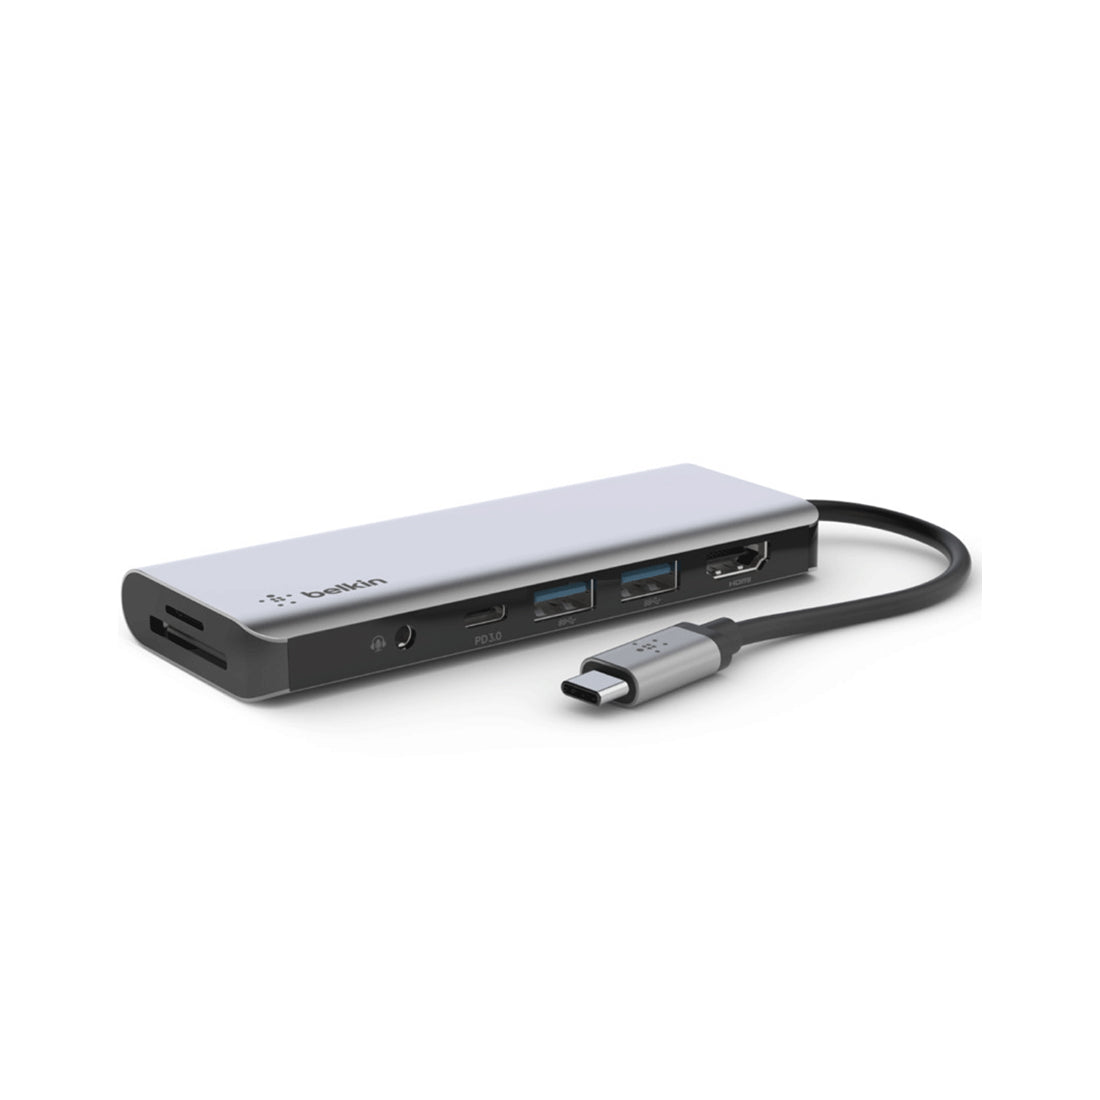 Belkin USB-C 7-in-1 Multiport Adapter - موزع - Store 974 | ستور ٩٧٤